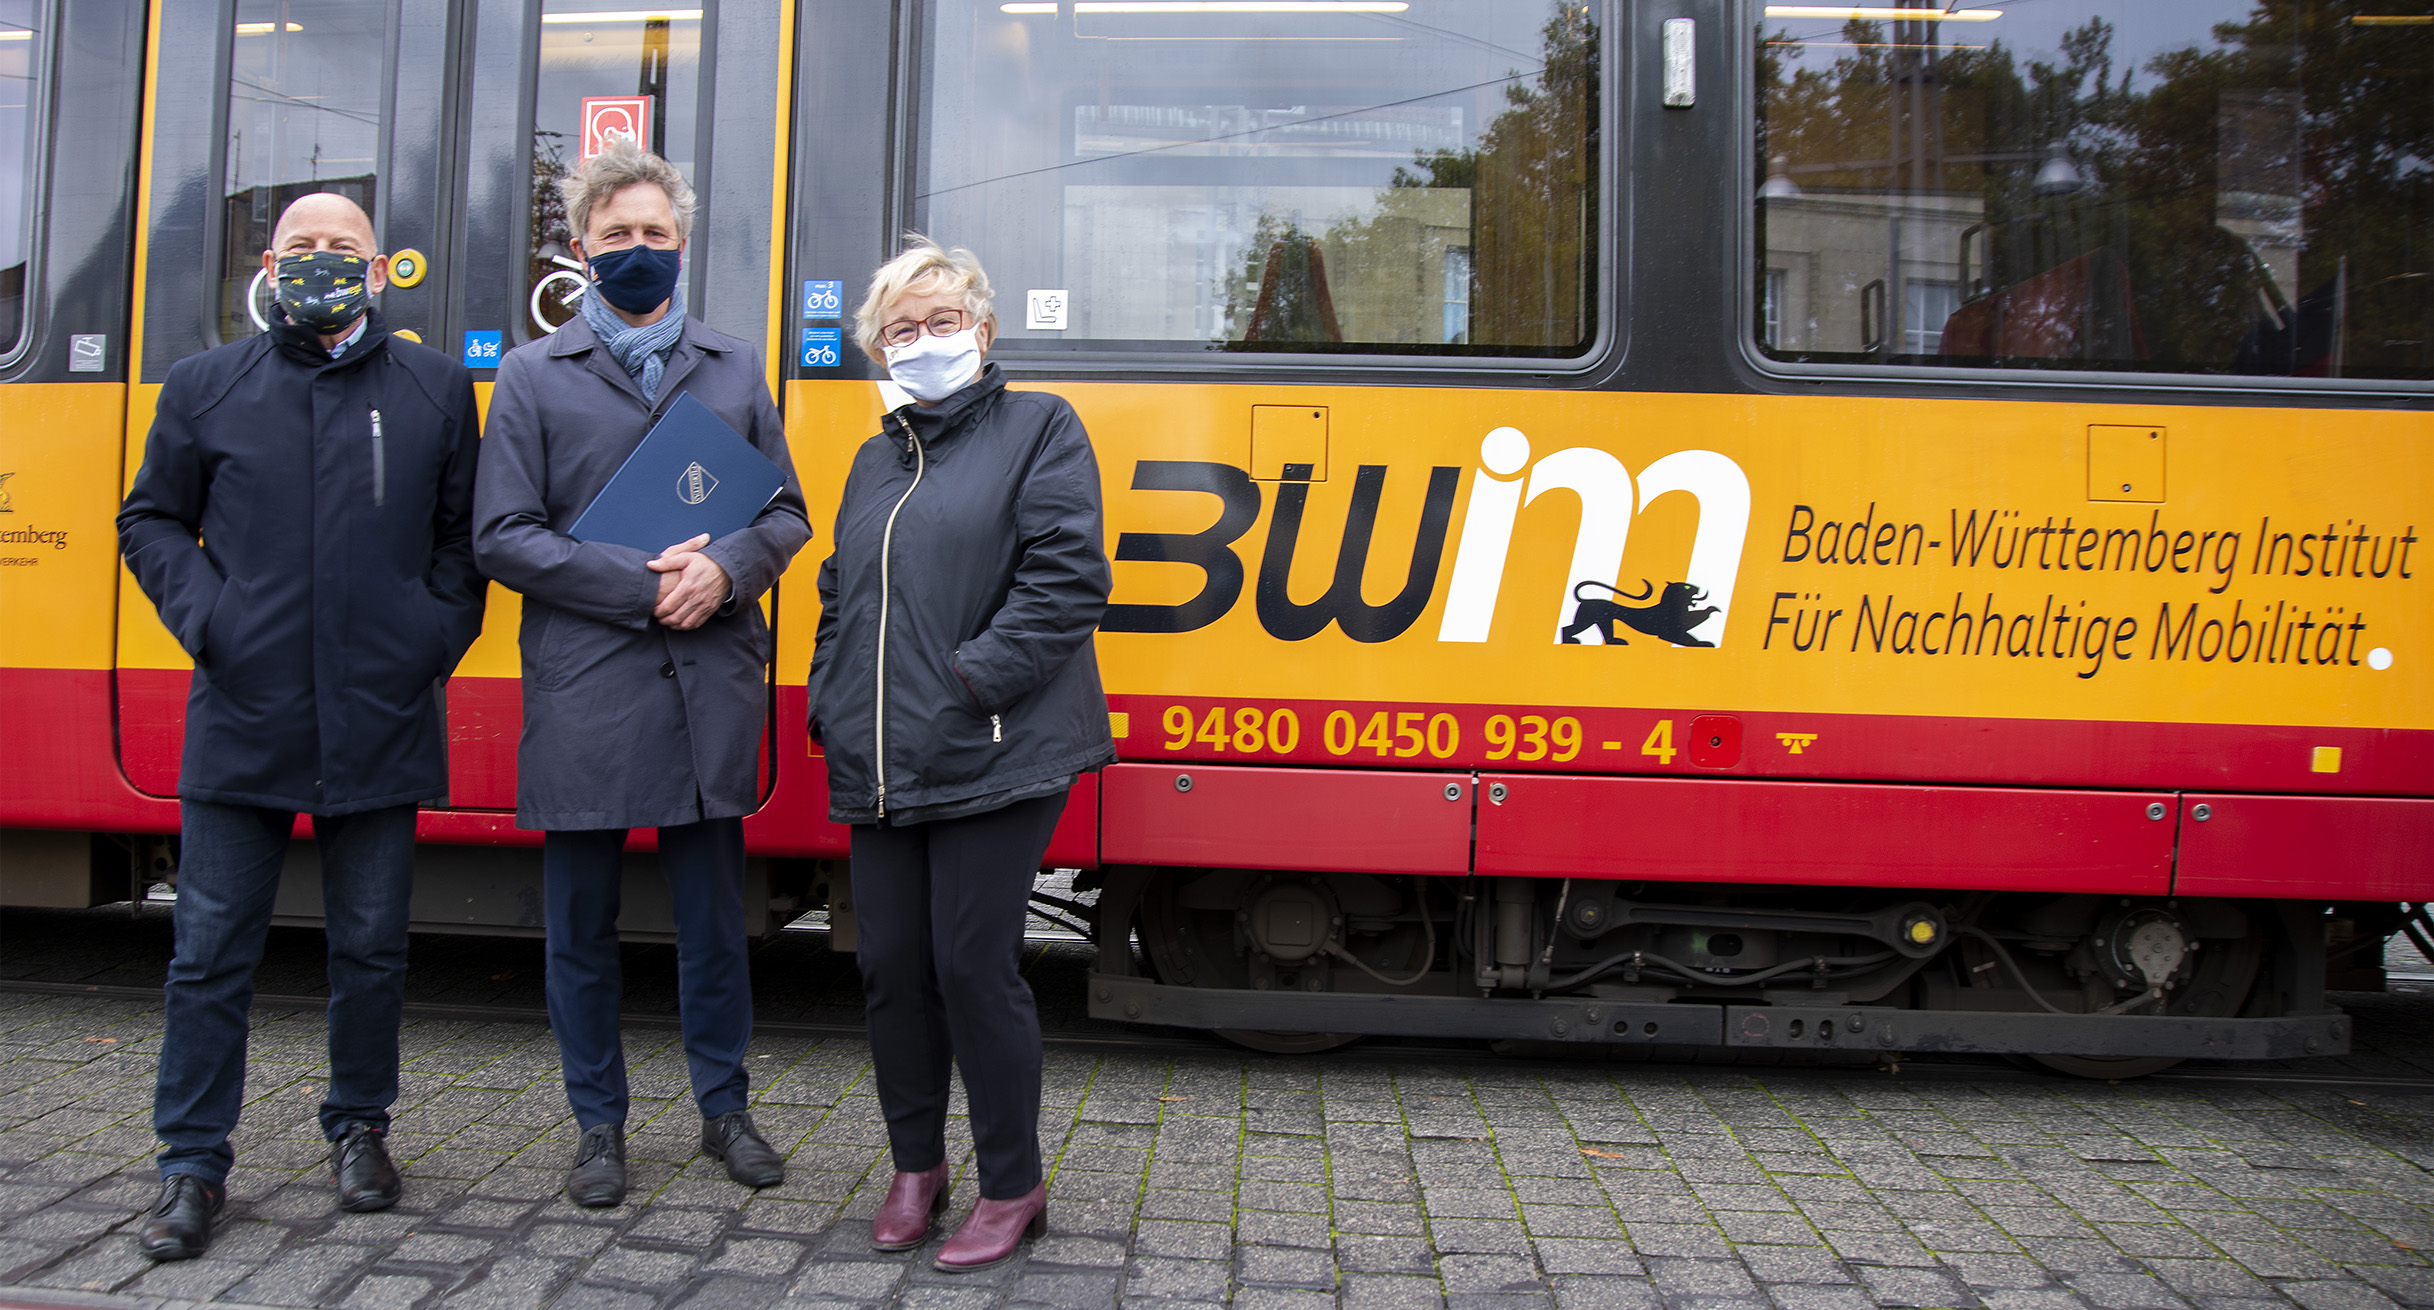 Verkehrsminister Hermann steht gemeinsam mit Oberbürgermeister Mentrup und Wissenschaftsministerin Bauer vor einer Straßenbahn mit der Aufschrift des BW Institut für nachhaltige Mobilität.']